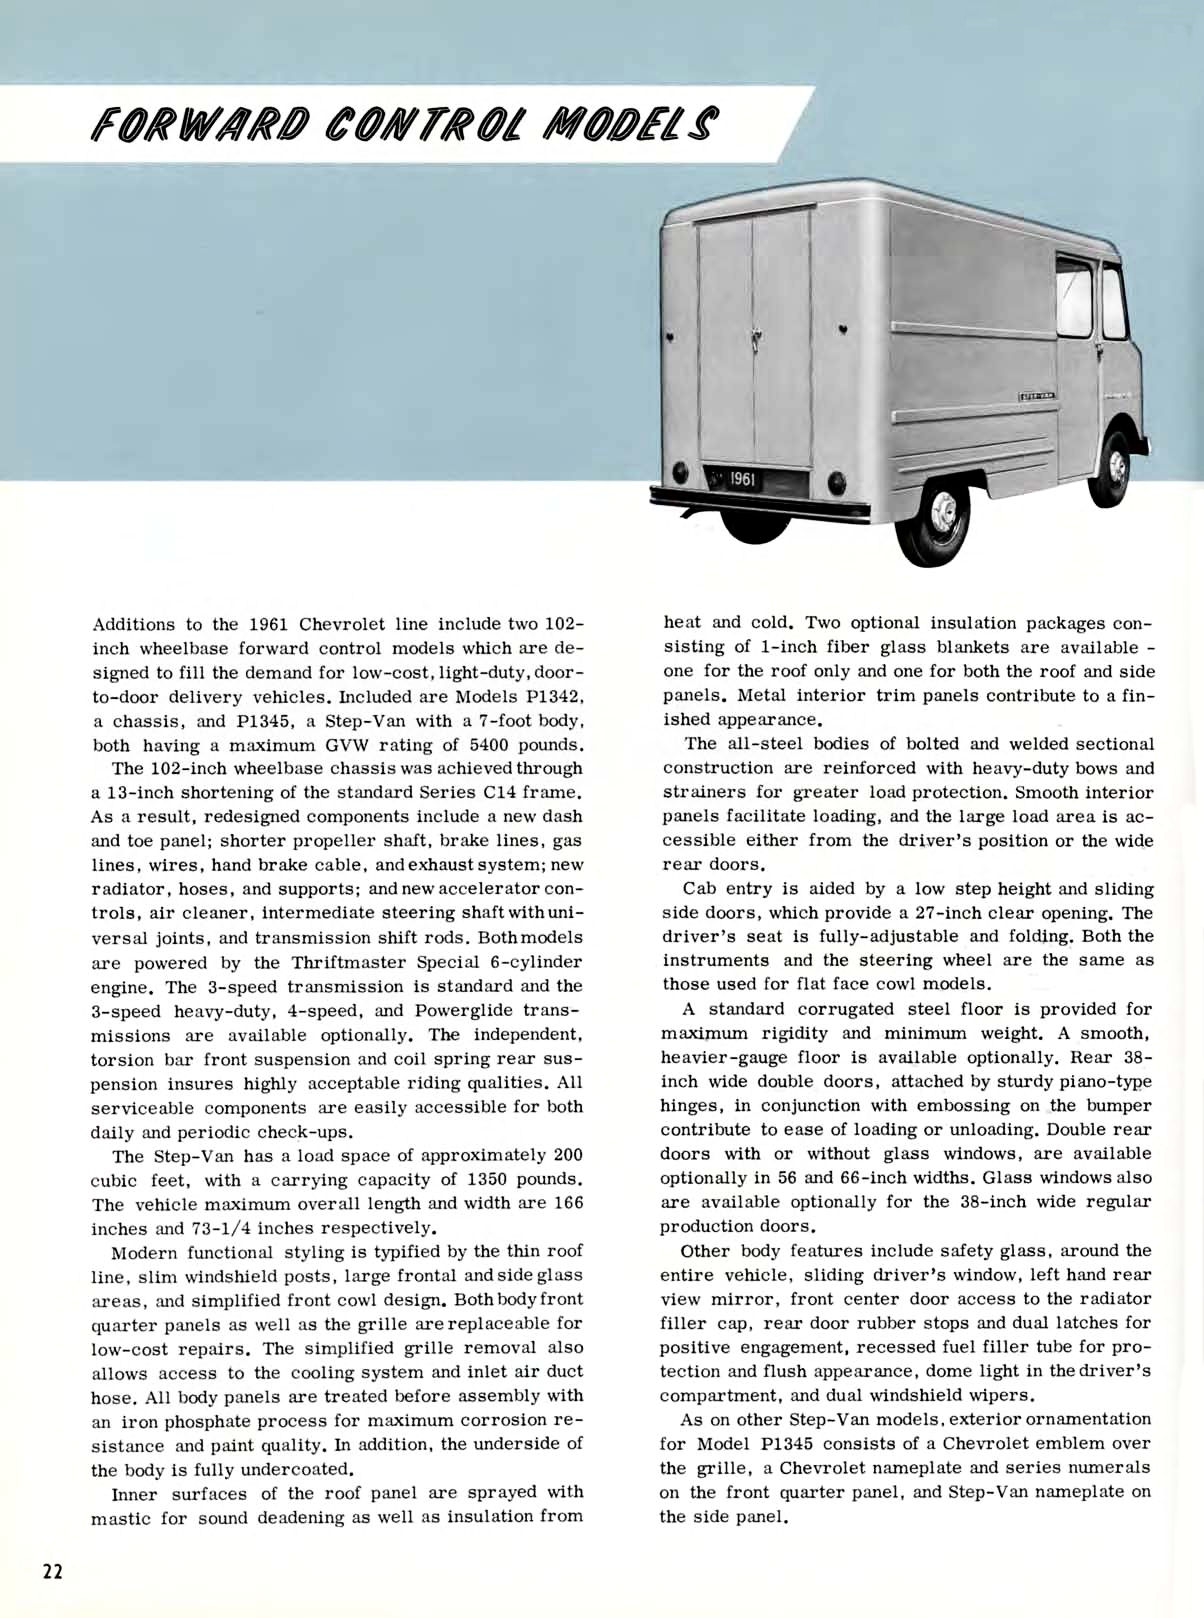 1961 Chevrolet Truck Engineering Features-22